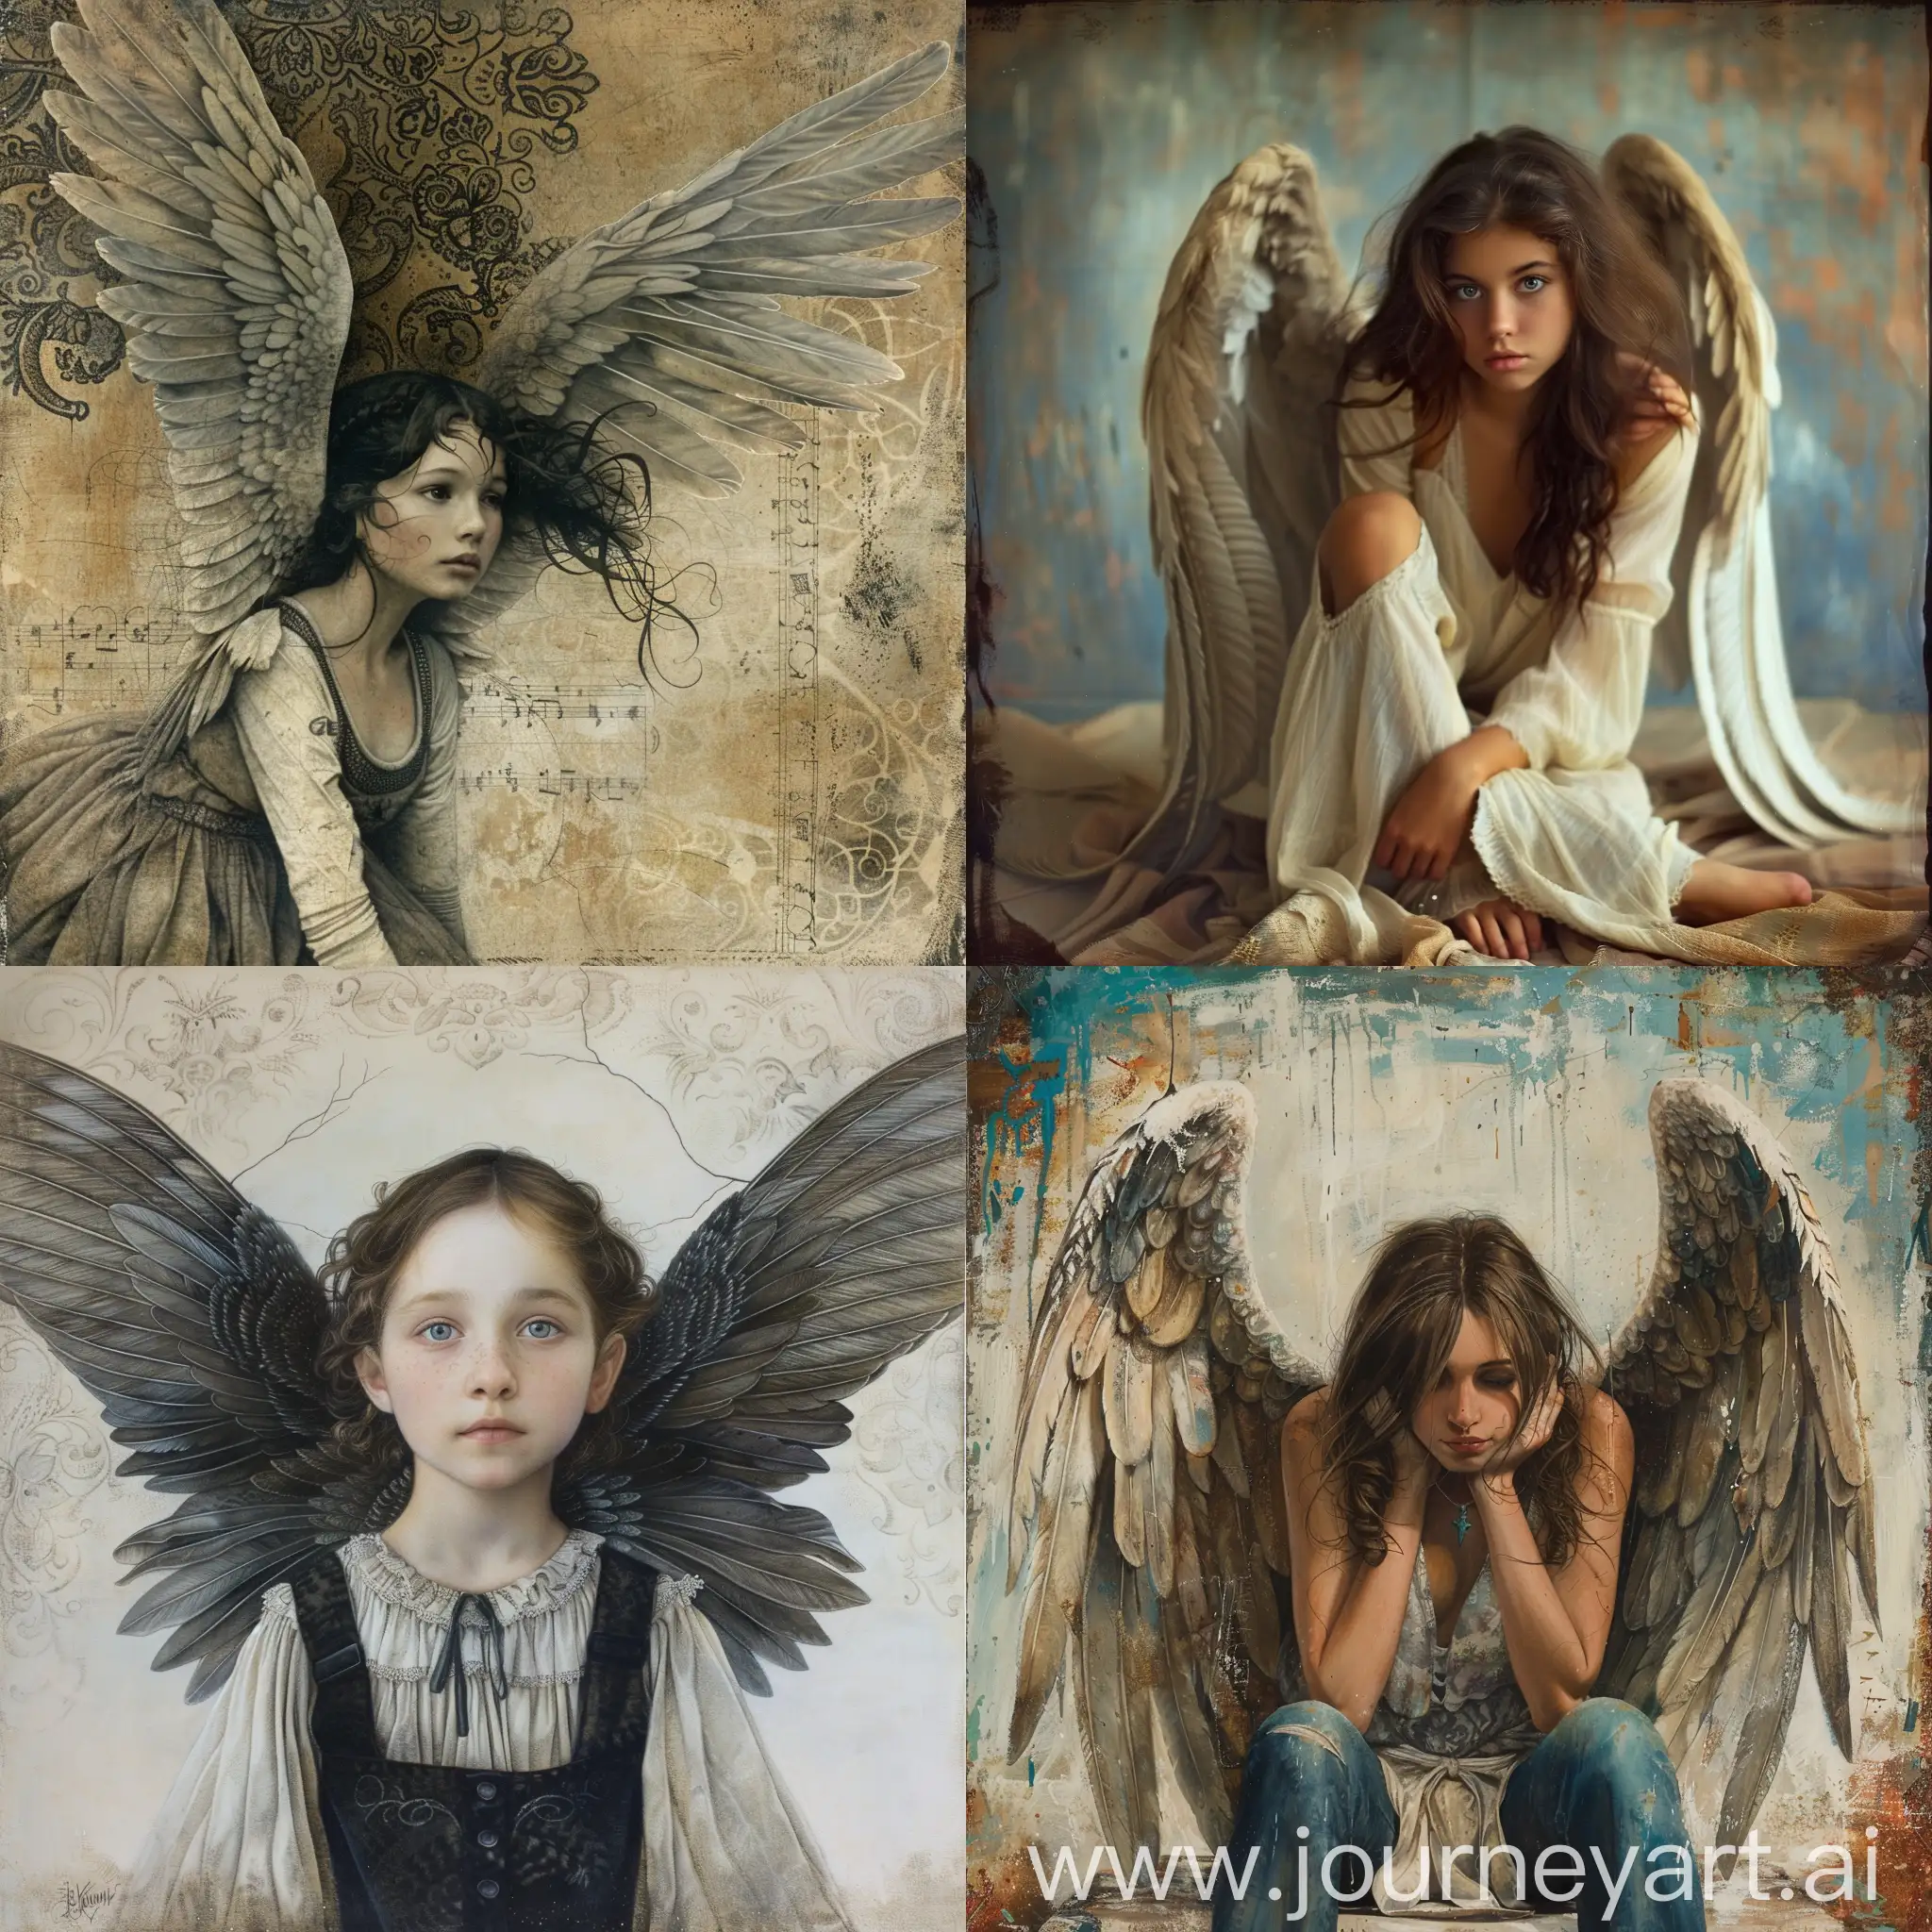 Enchanting-Girl-with-Wings-in-Dreamlike-Landscape